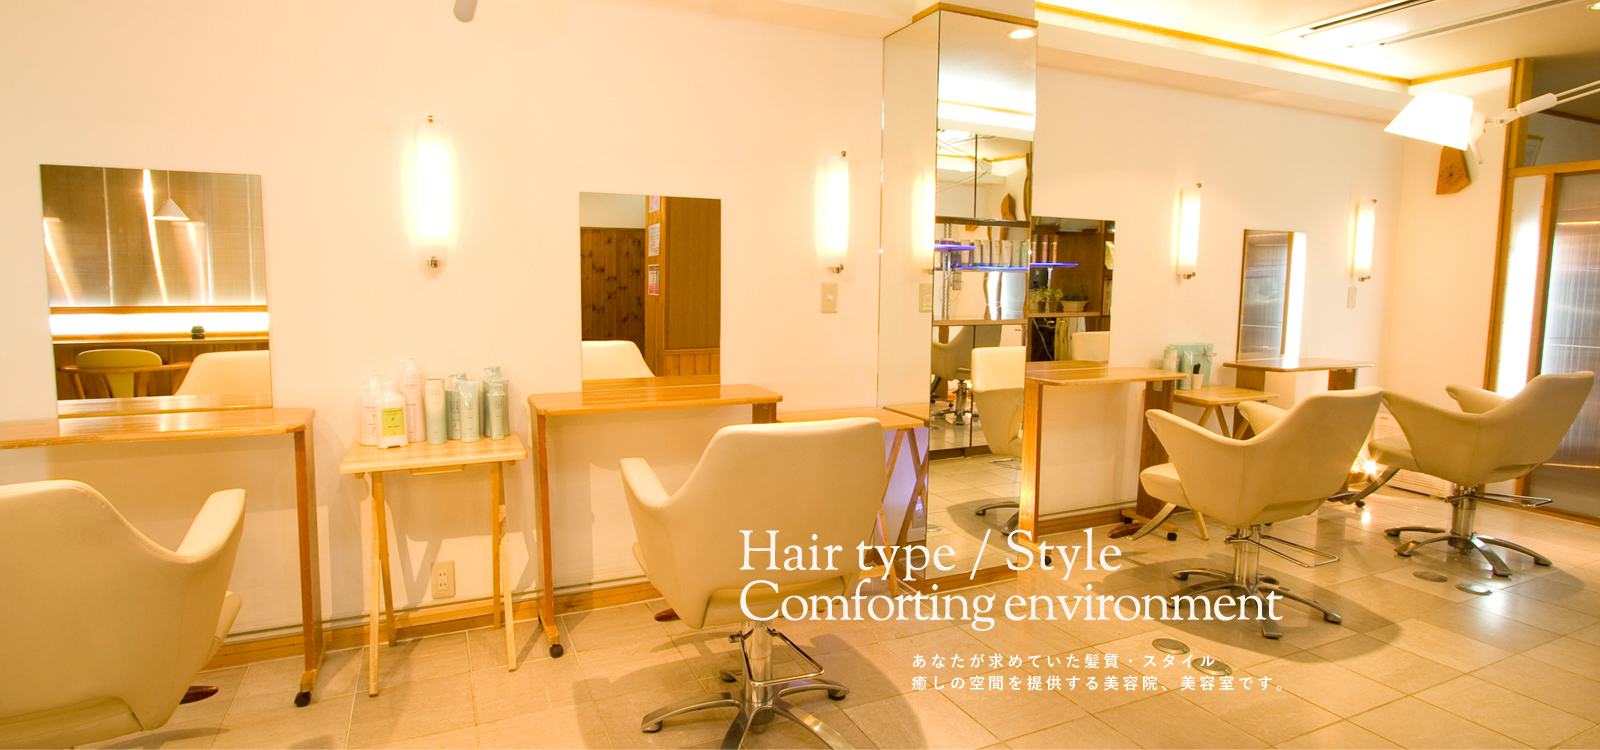 あなたが求めていた髪質・スタイル 癒しの空間を提供する美容院、美容室です。